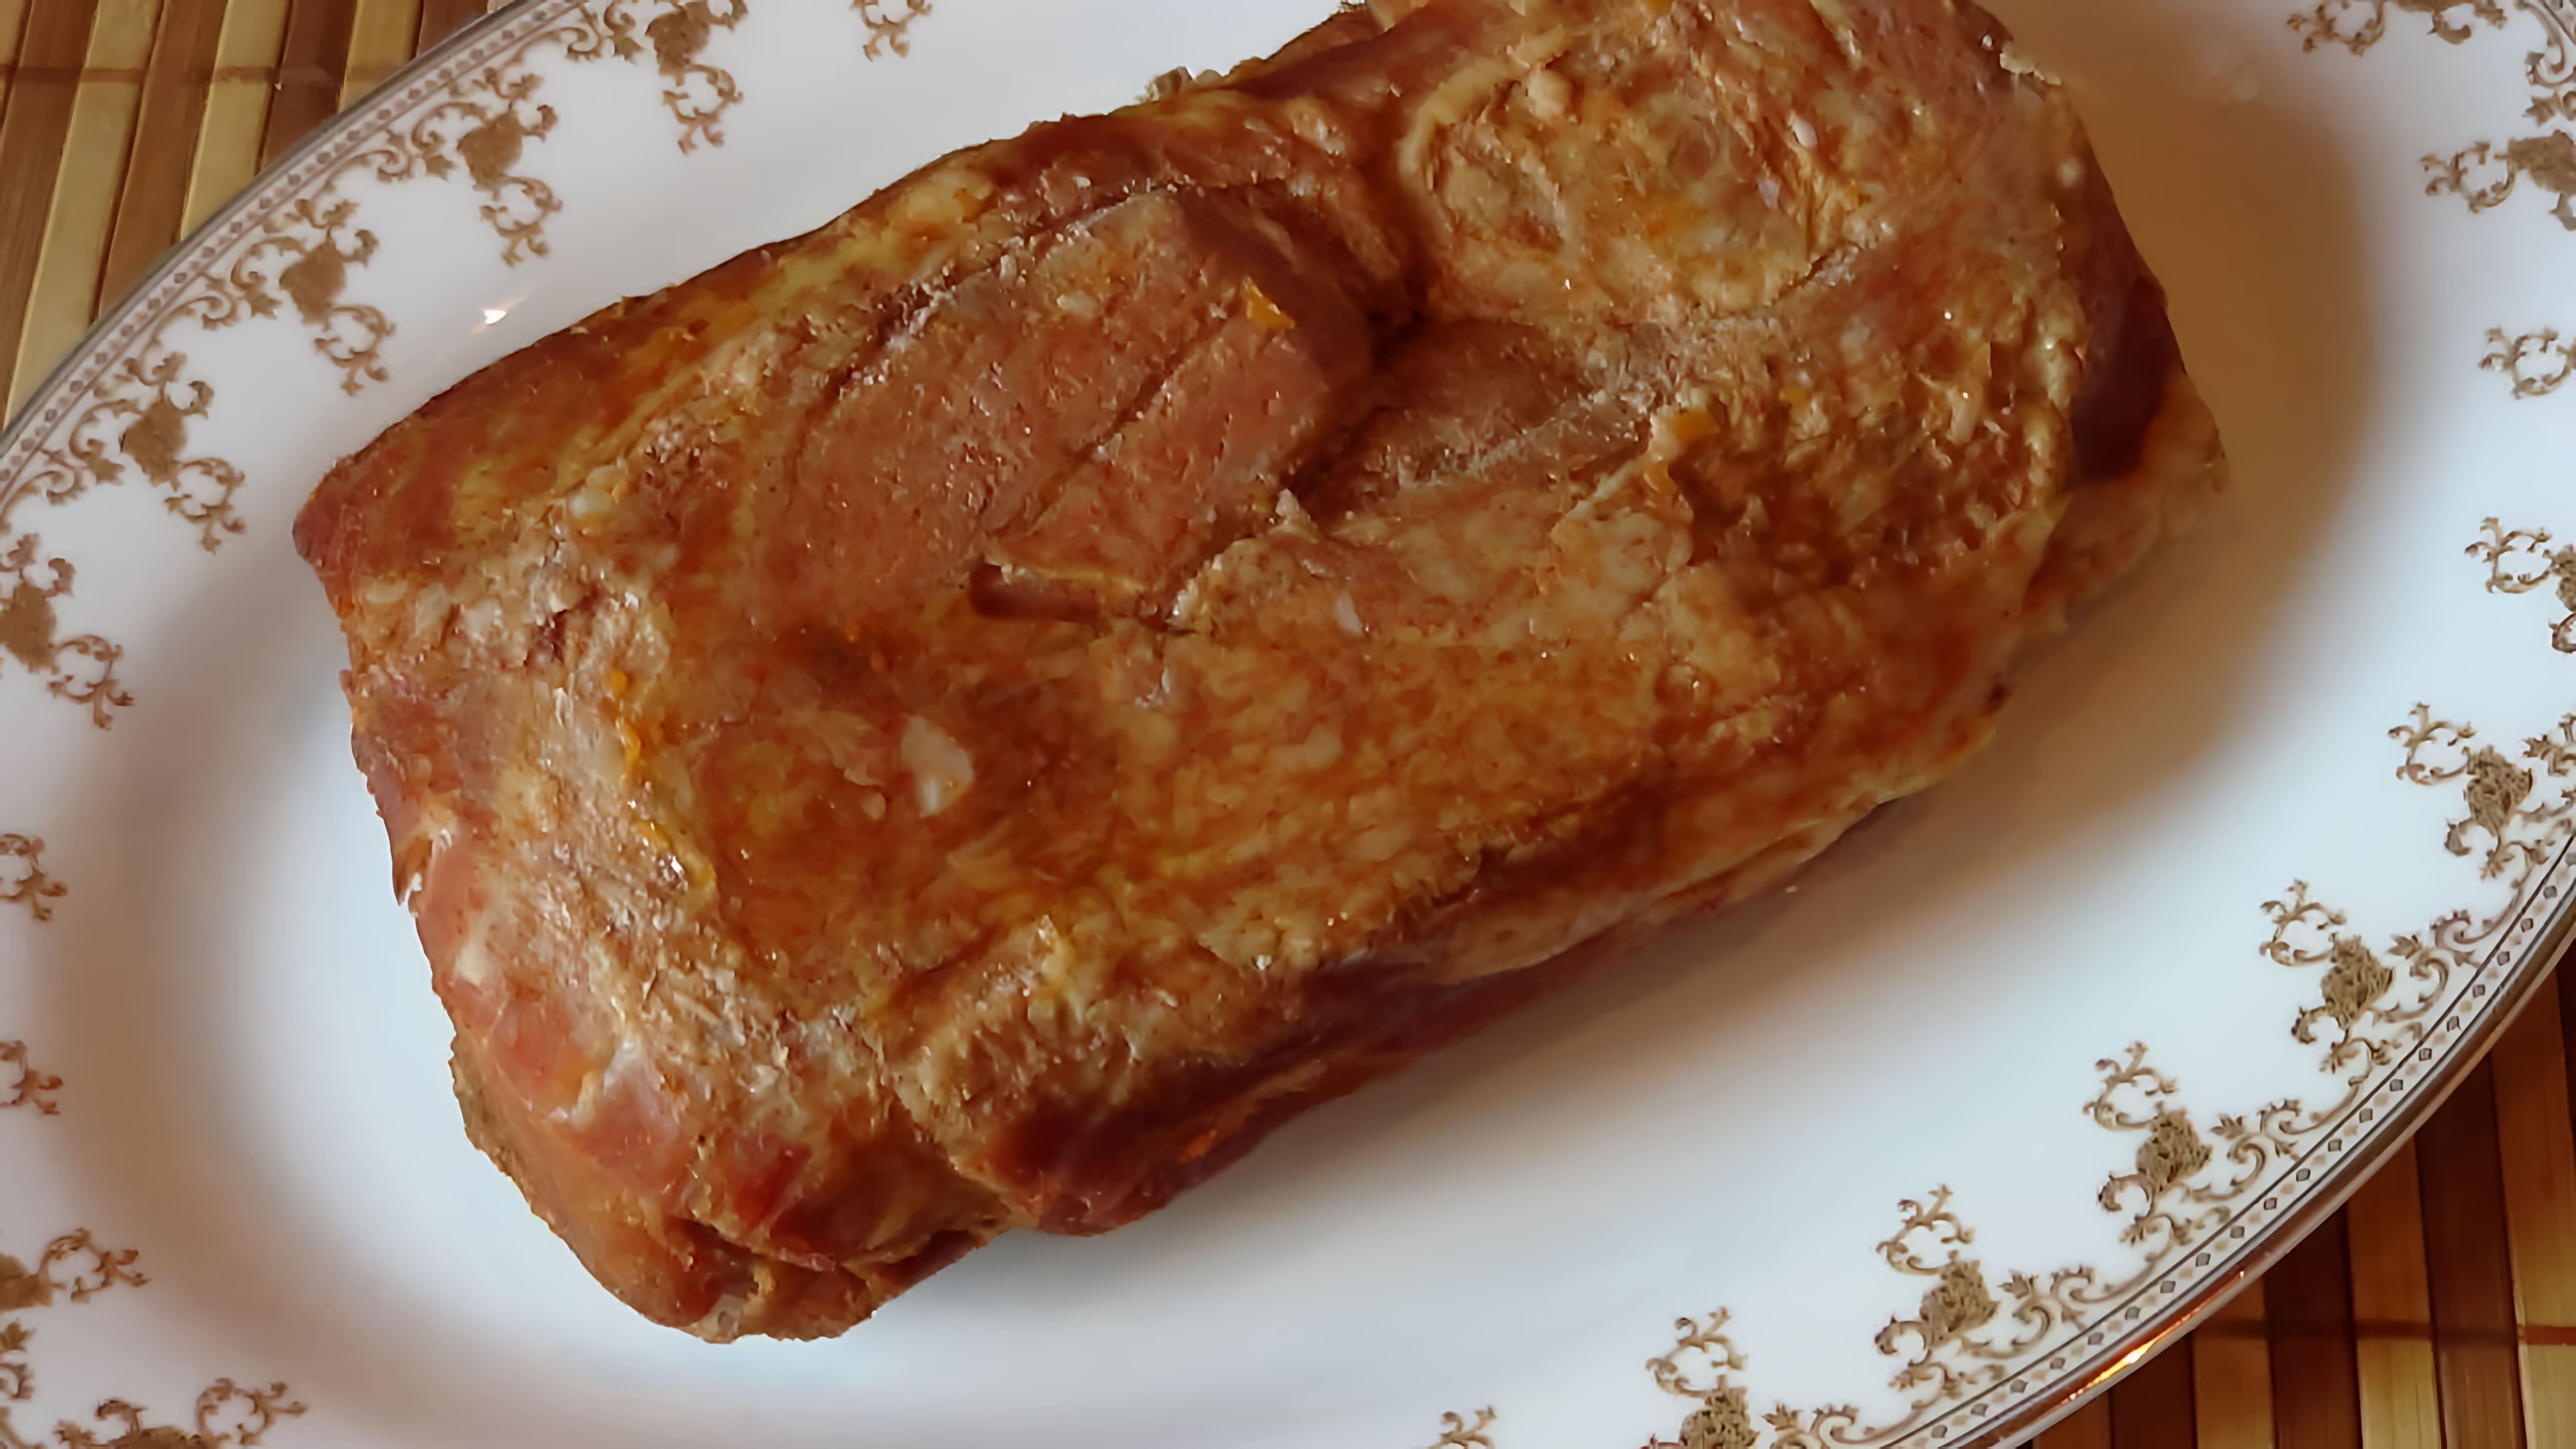 В этом видео демонстрируется процесс приготовления буженины - традиционного праздничного блюда из свинины